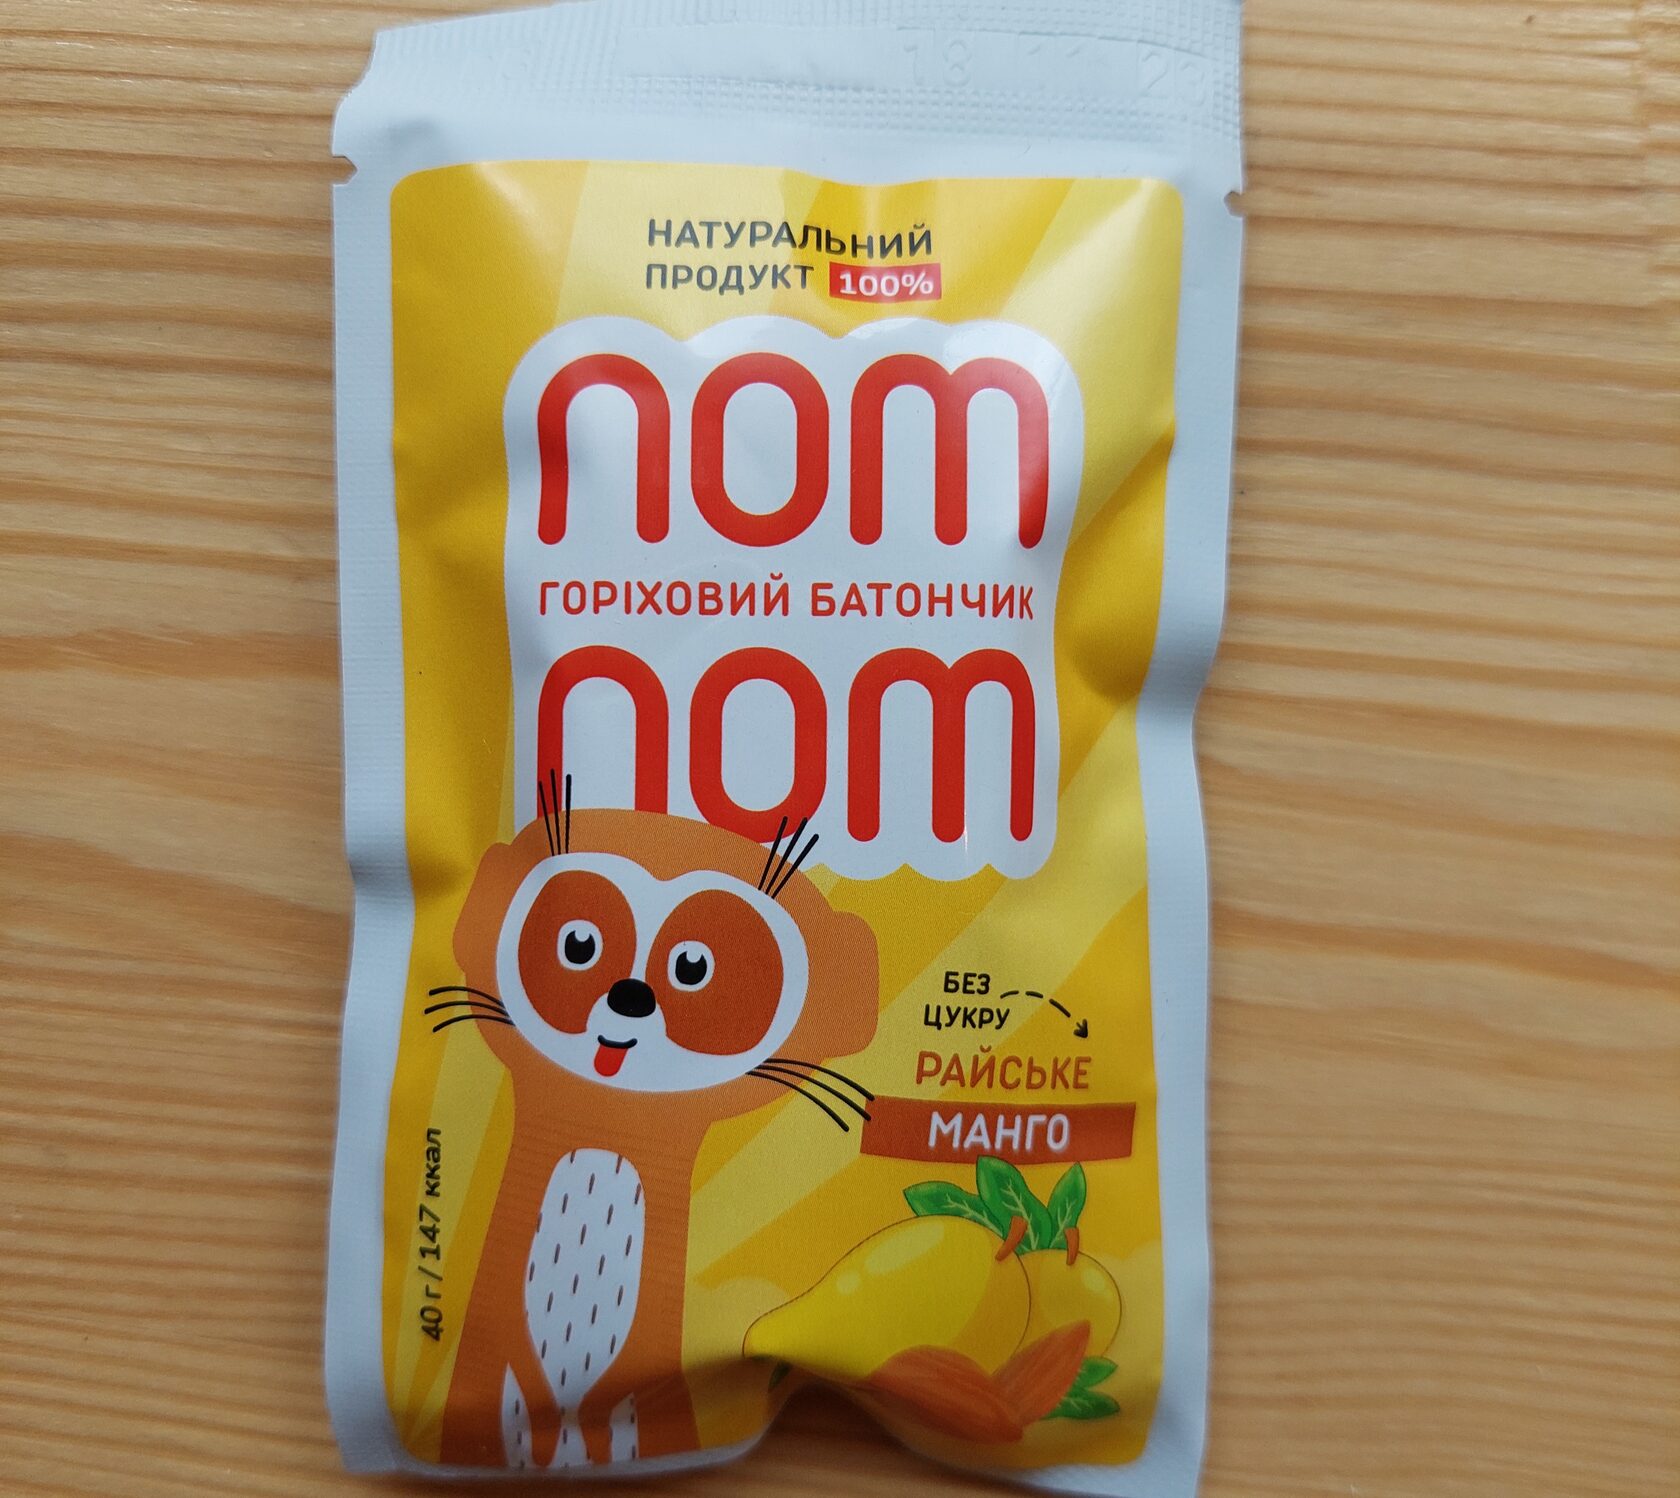 Батончик Райське манго Nom Nom 40г